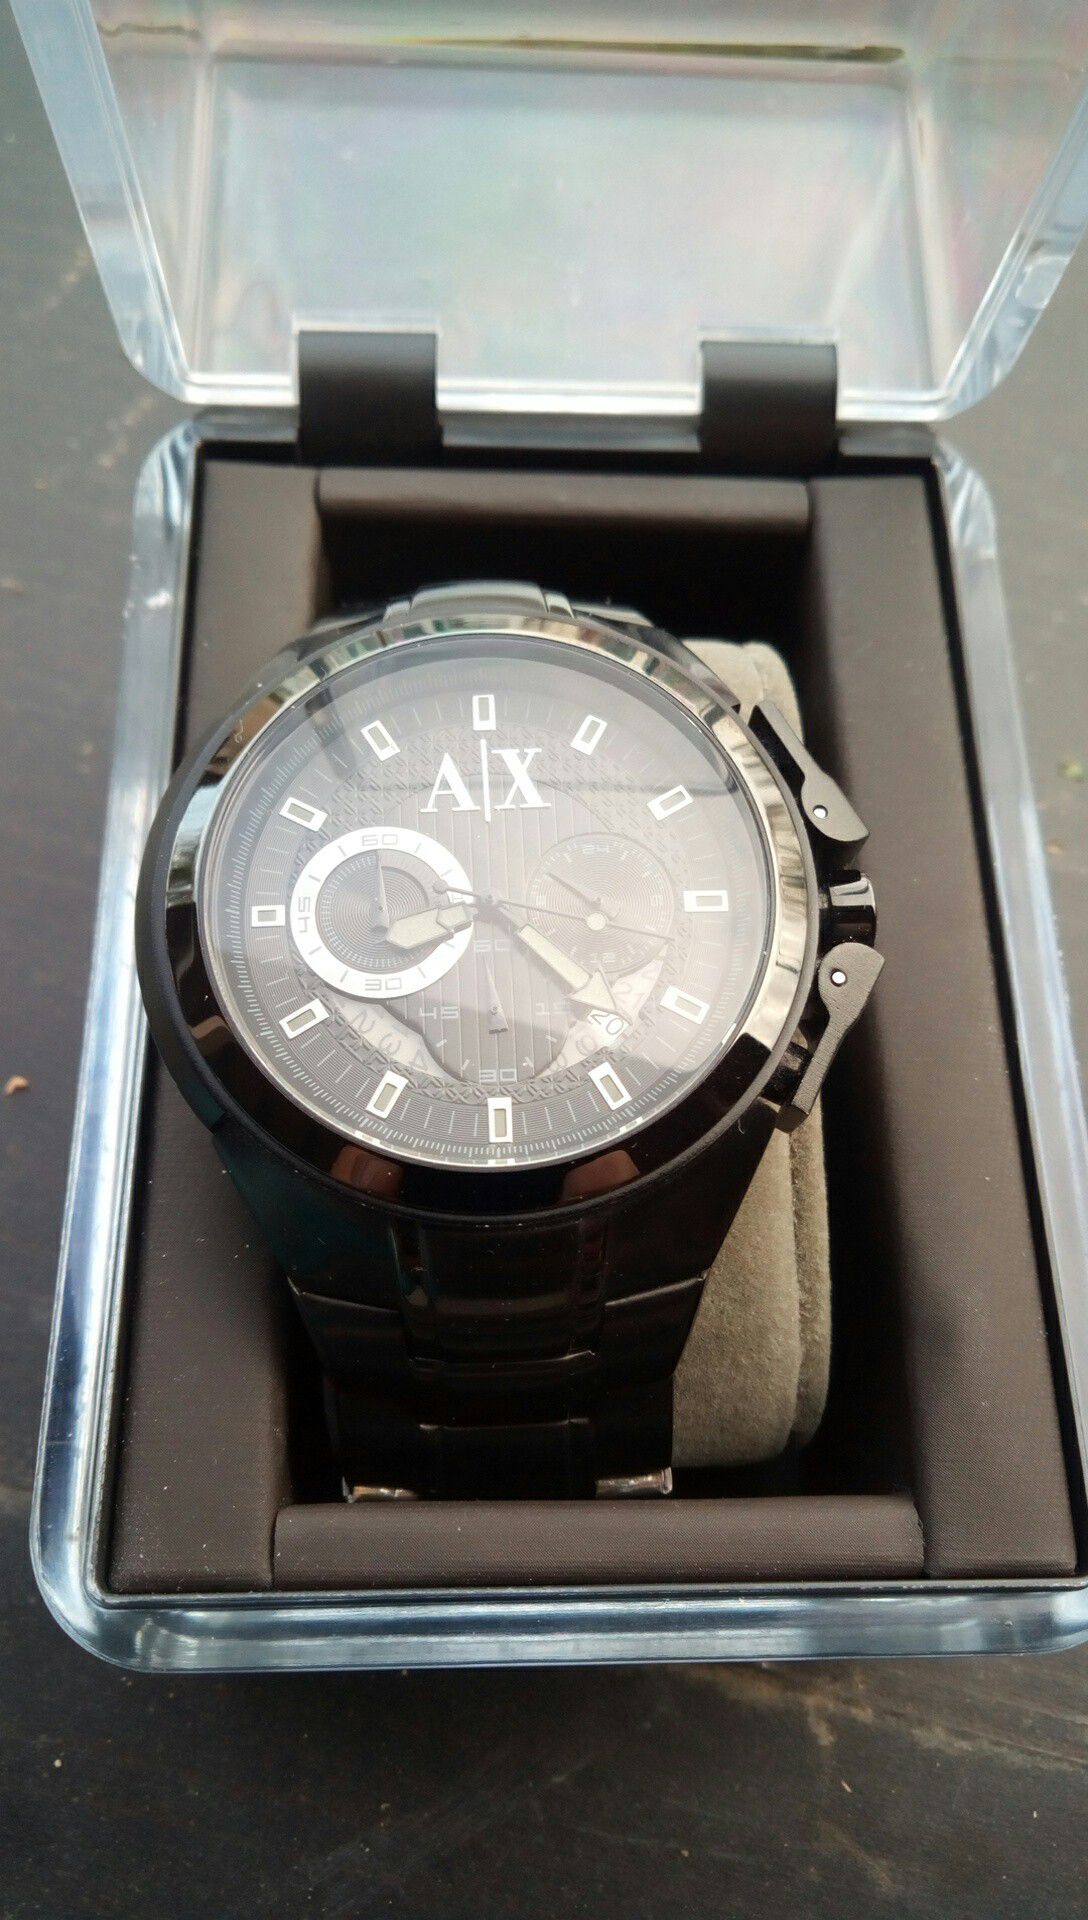 Armani exchange watch